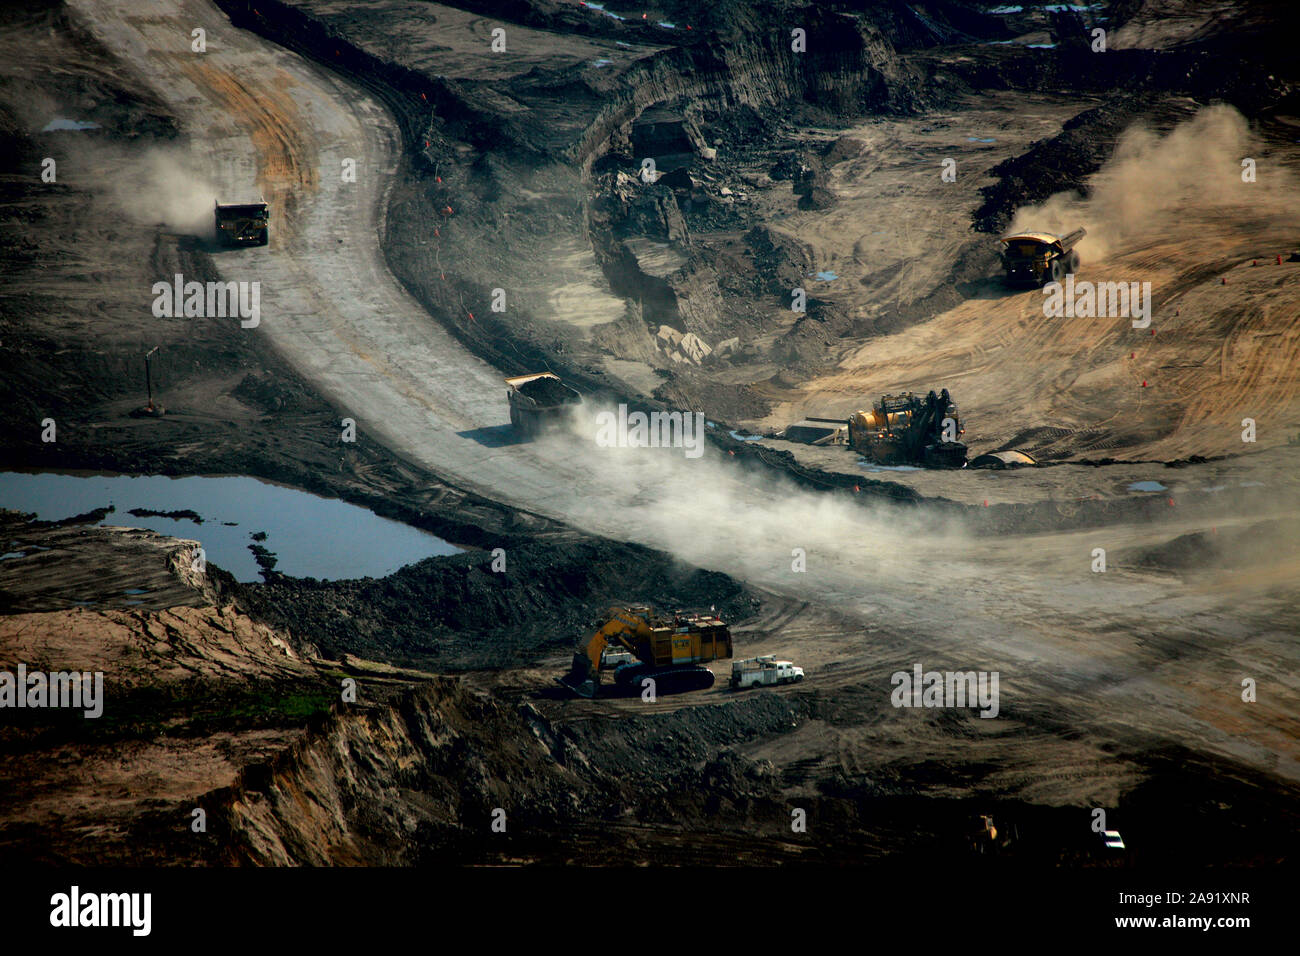 Scavo di sabbia di olio a uno del petrolio miniere di sabbia in Fort McMurray in Alberta, Canada. L'Athabasca oil sands deposito è tra le più grandi del mondo. Il bitume, anche comunemente denominato tar (quindi tar sands), contiene un sacco di idrocarburi, ma è notoriamente difficile da estrarre. Per ogni 100 BTU di energia estratta, 70 BTU è perso nel processo. Soltanto nel 2011, l'olio le sabbie Operazioni in Canada prodotti 55 milioni di tonnellate di 'le emissioni di gas a effetto serra". Questo è l'otto per cento del Canada è emissioni totali. Foto Stock